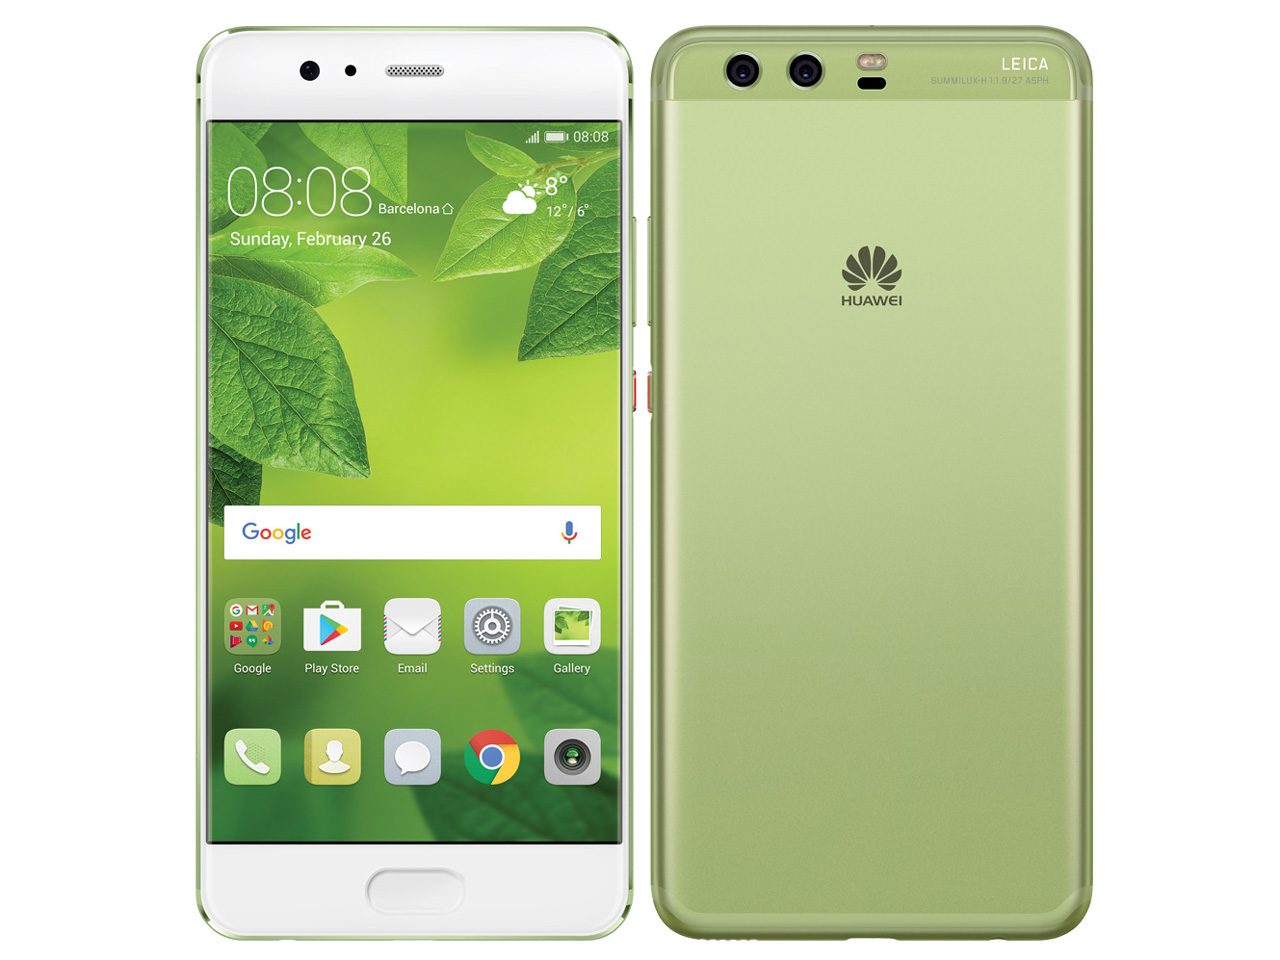 【訳あり】 Huawei P10 SIMフリー/64GB/ブラック 海外版 Plus スマートフォン本体